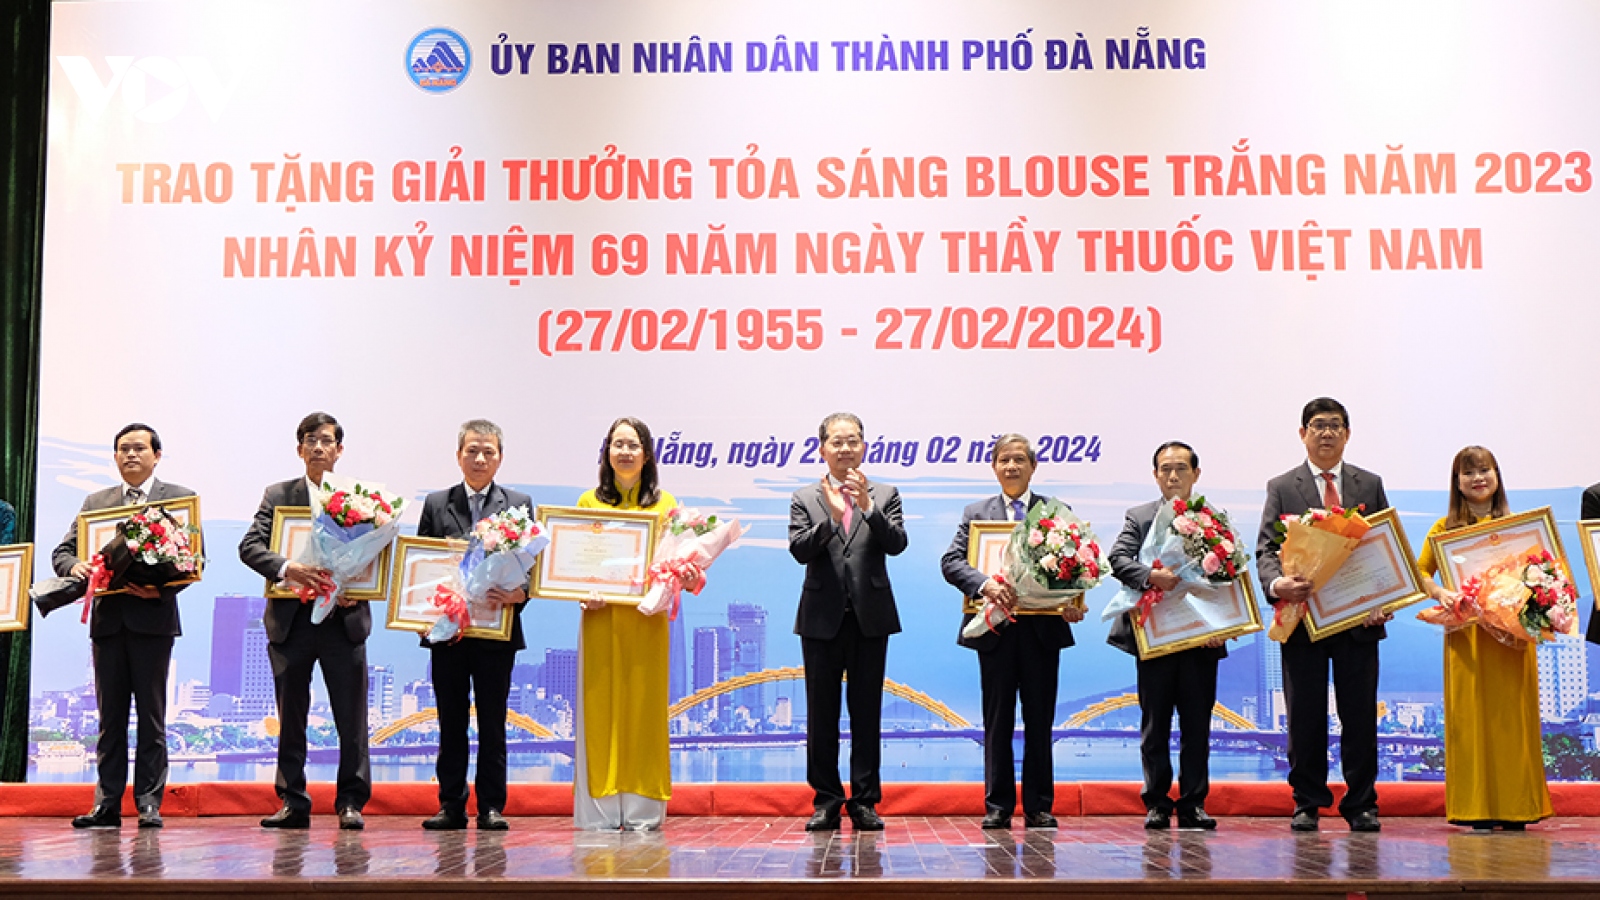 20 y, bác sĩ tiêu biểu ở Đà Nẵng nhận giải thưởng "Toả sáng Blouse trắng"